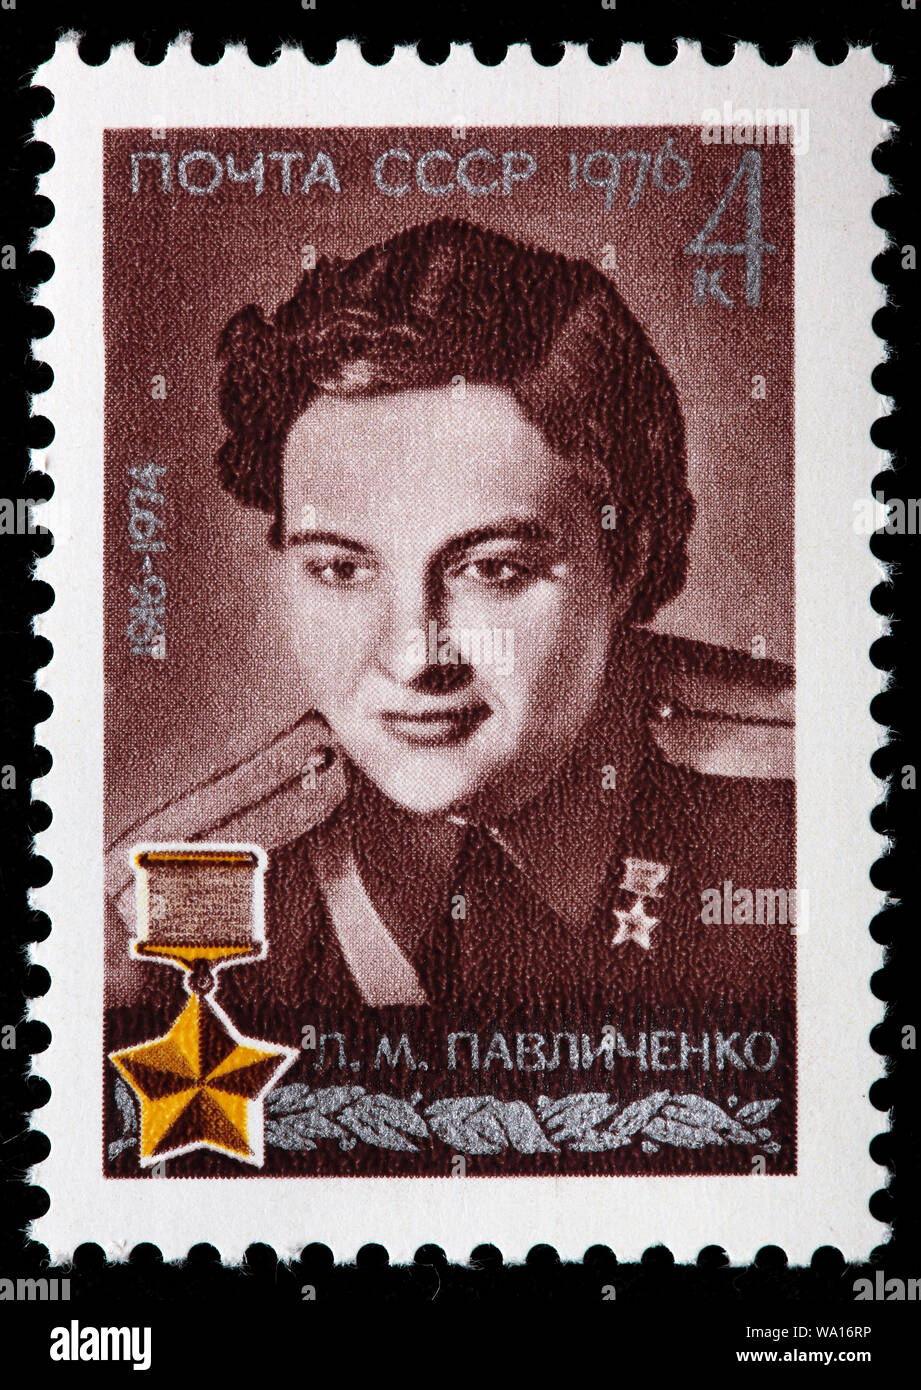 Lyudmila Pavlichenko (1916-1974), Soviet sniper during World War II, postage stamp, Russia, USSR, 1976 Stock Photo